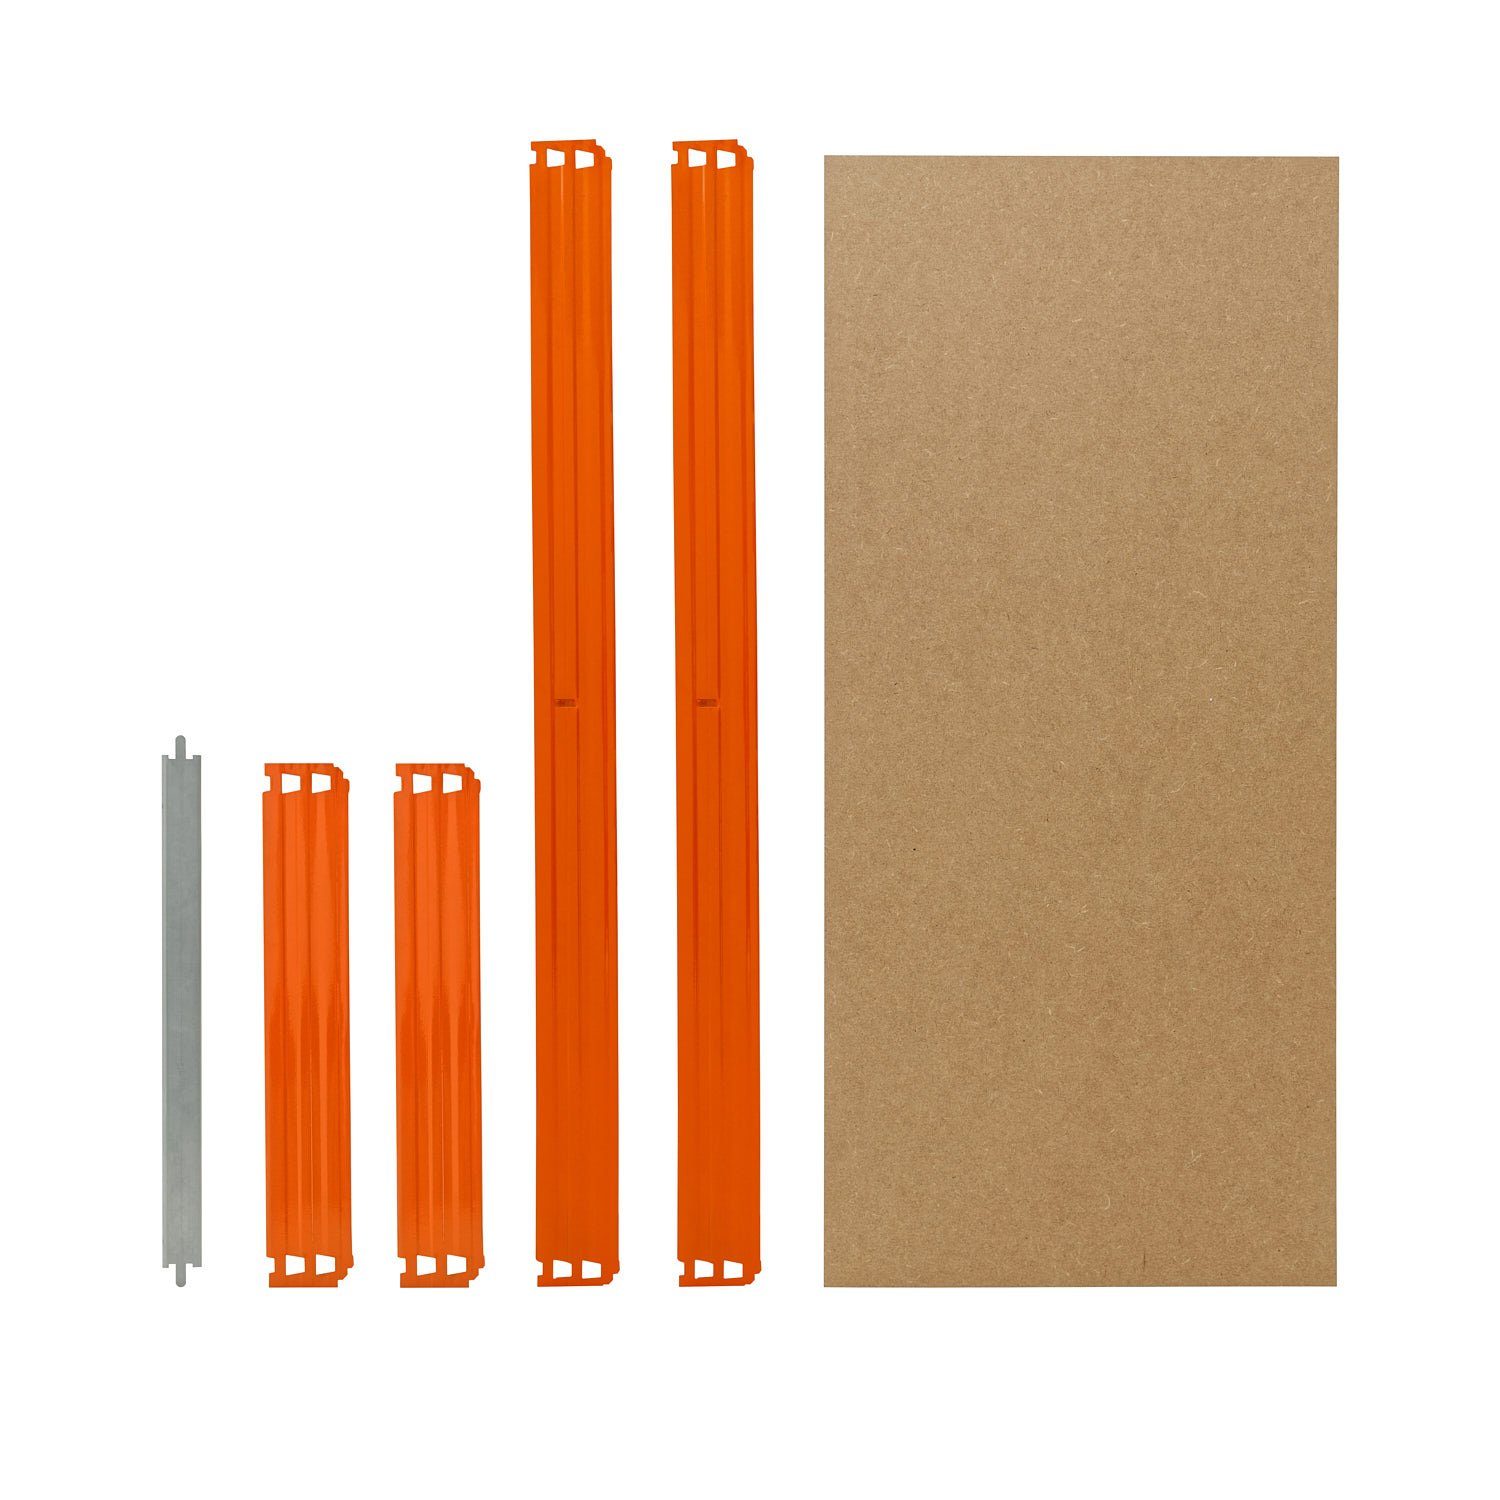 Schwerlastregale Fachboden-Set HDF-Fachboden, zusätzliche cm shelfplaza Fachböden für in Schwerlastregal blau-orange, für Steckregale 100x30 PROFI, Komplettes